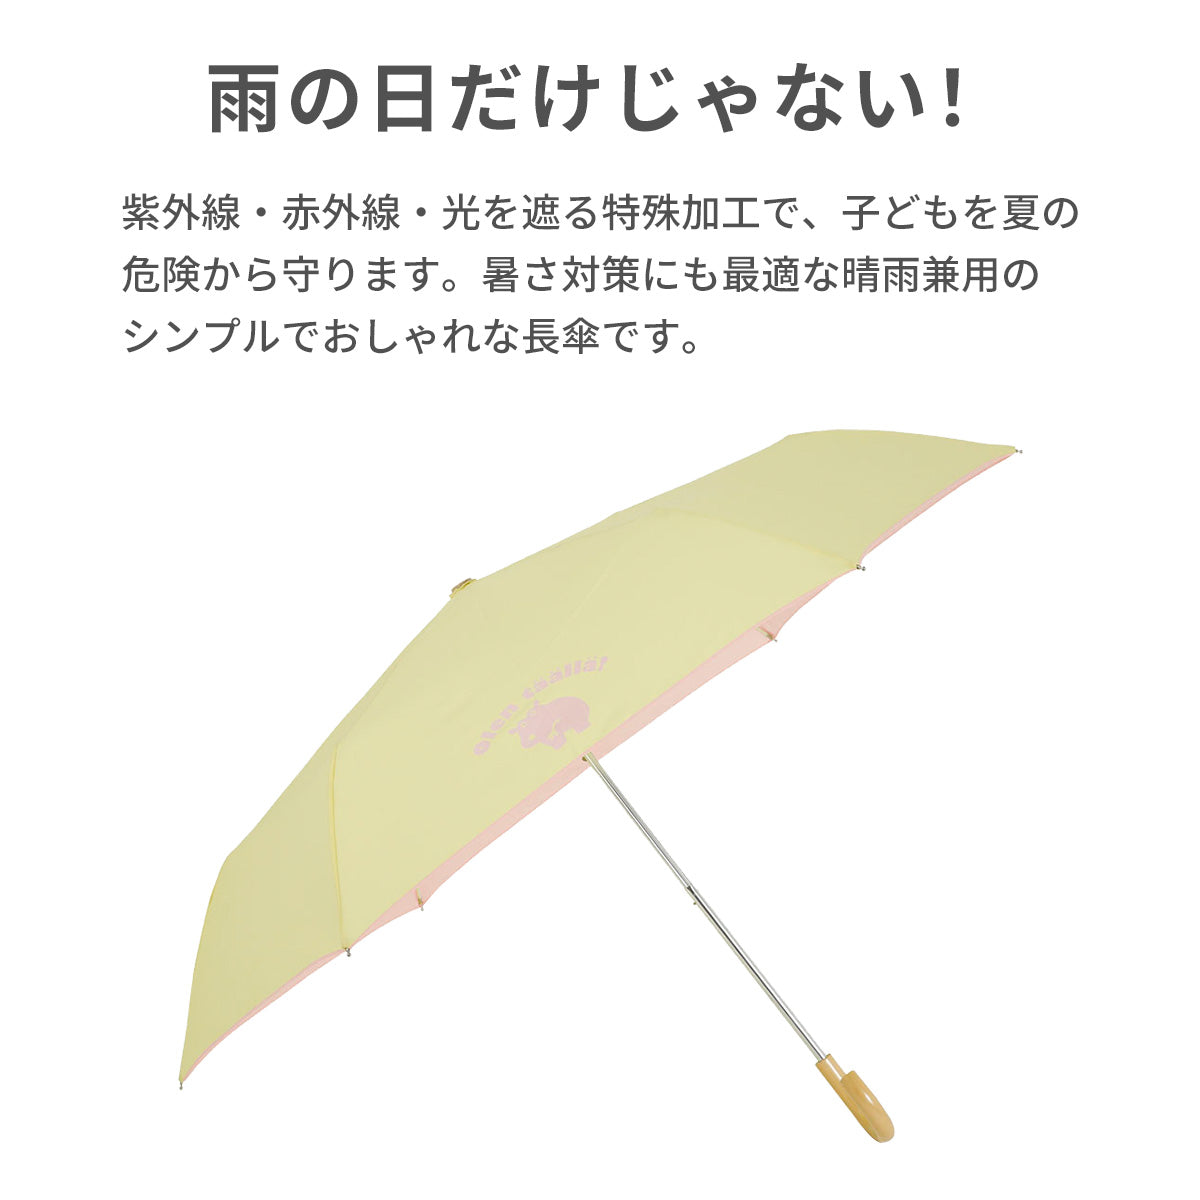 kukkahippo 折り畳み傘【送料無料】